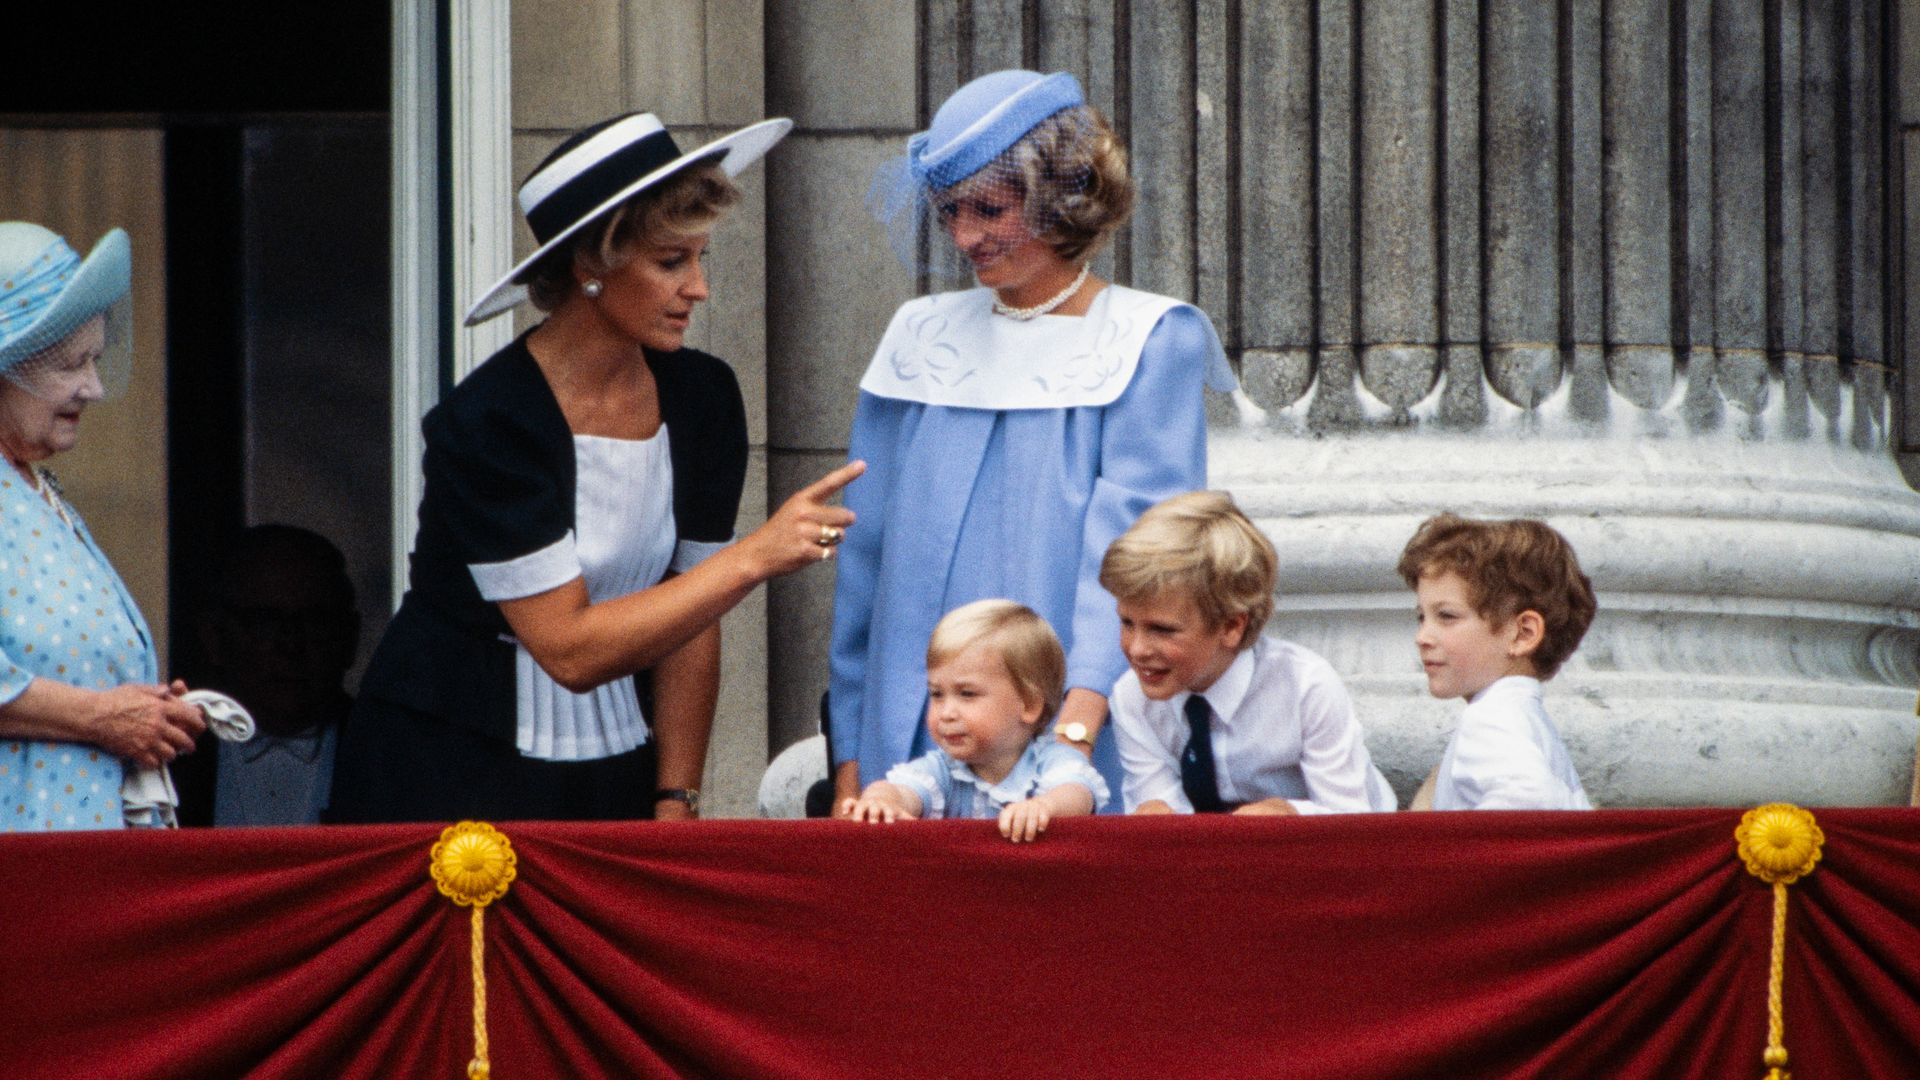 royal family on balcony at buckingham palace 